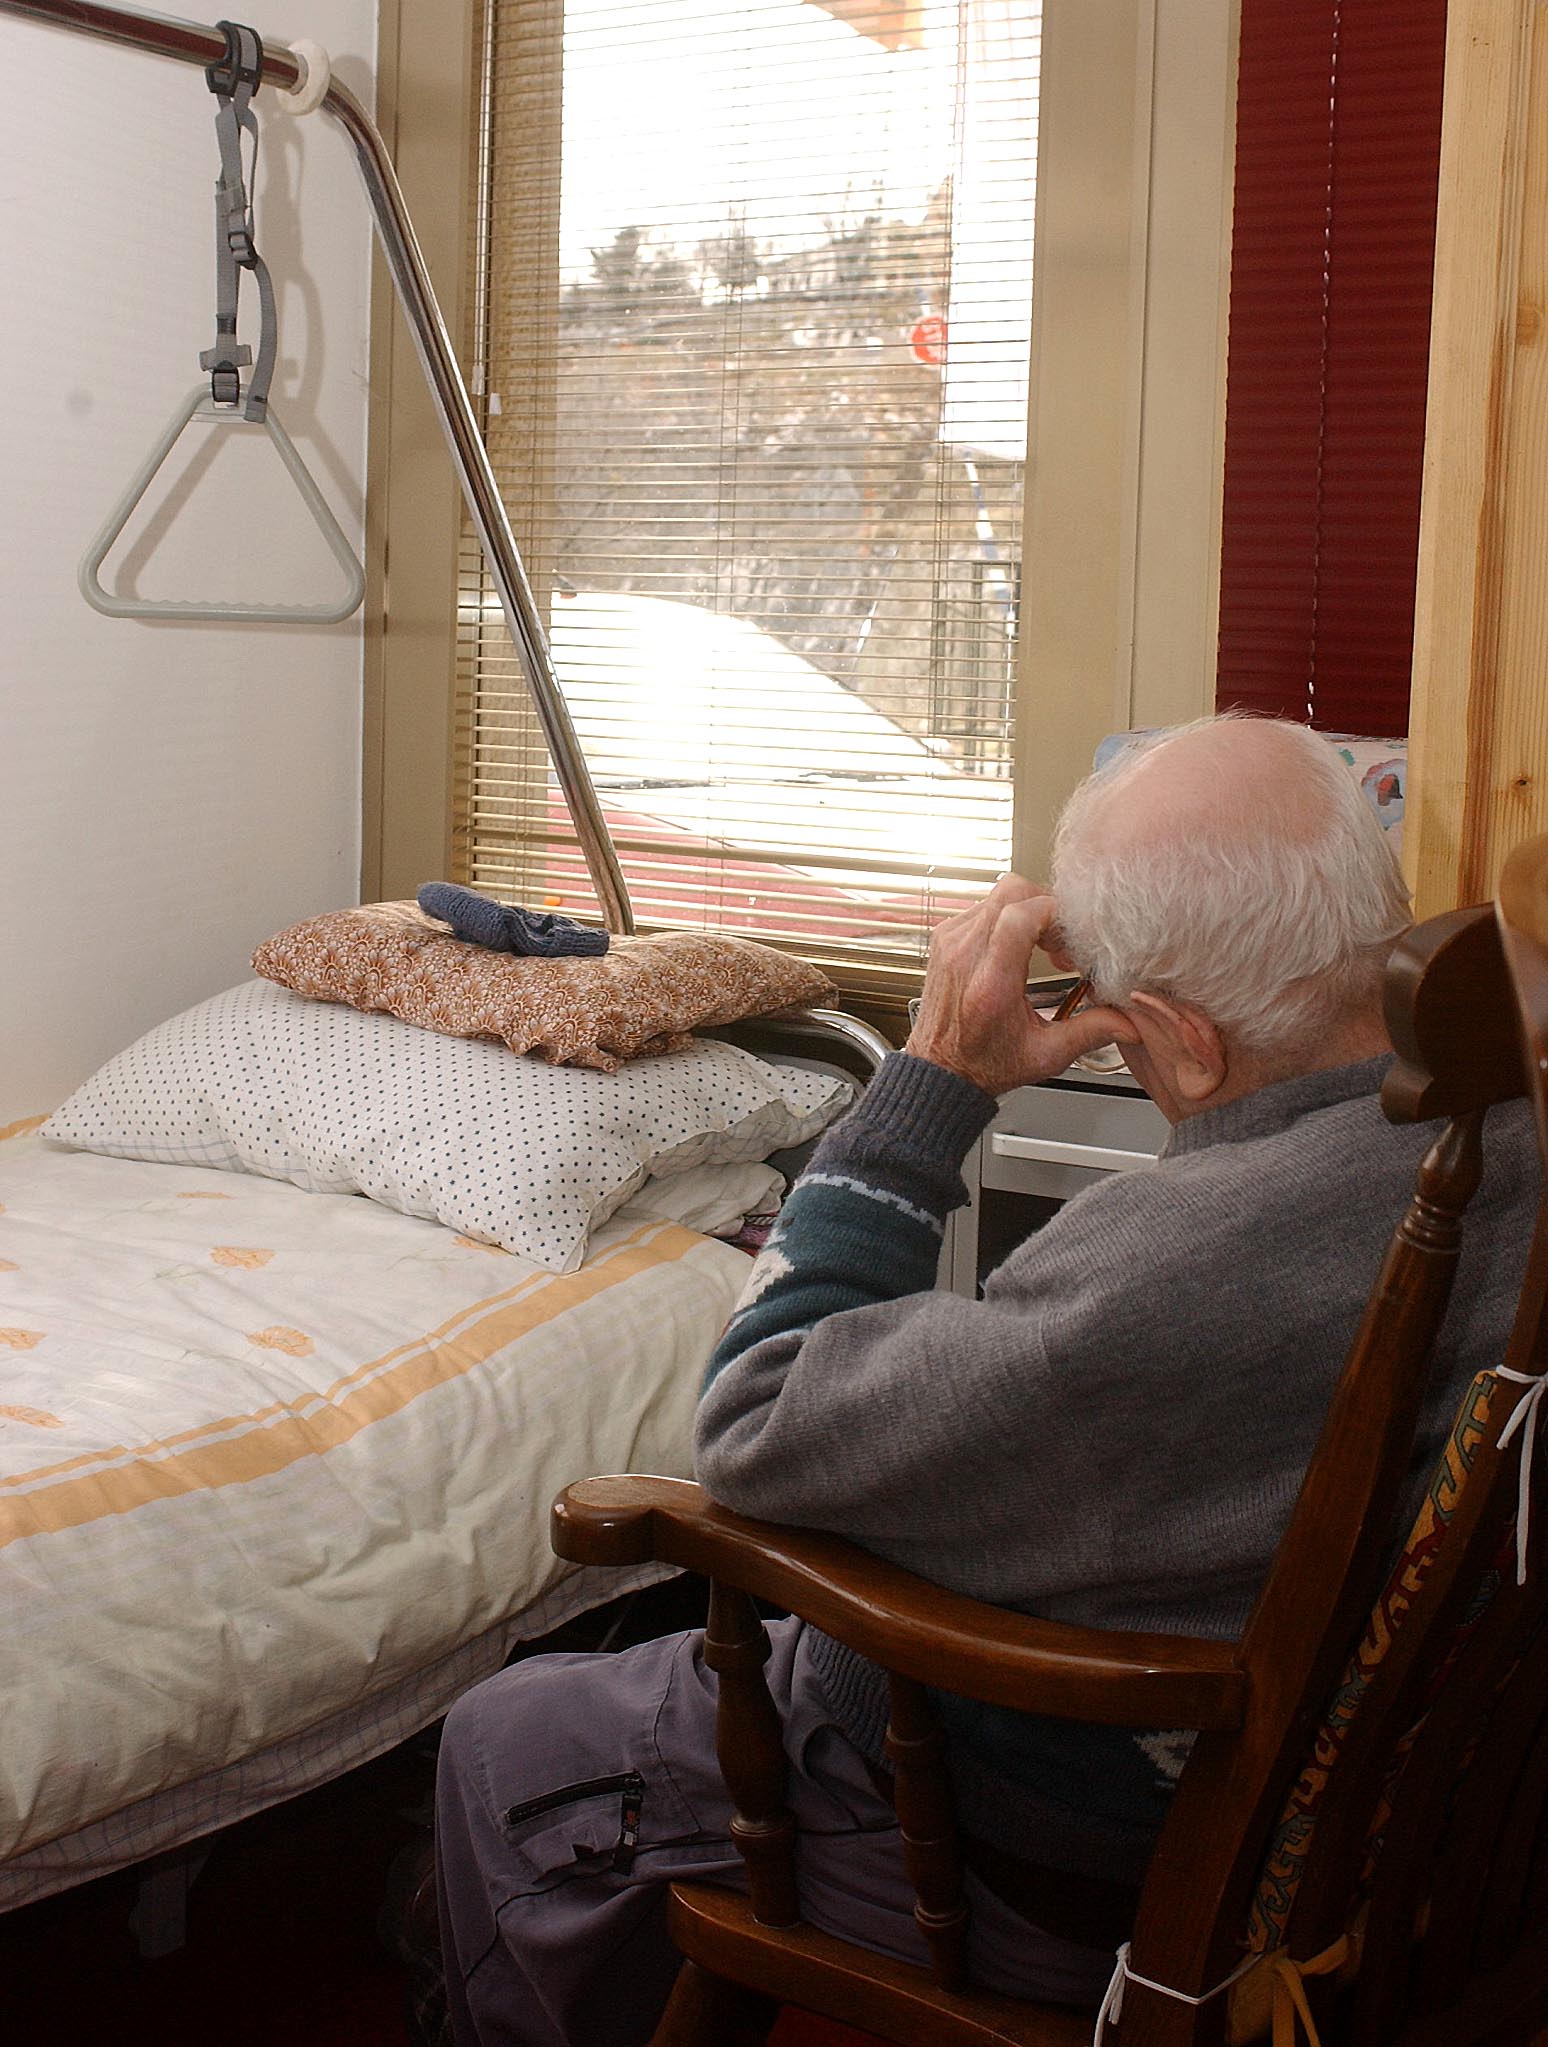 U zakonu bi vrlo detaljno moralo biti određeno što treba zadovoljiti dom koji skrbi za starije osobe te redovito raditi evaluaciju na način kako se to radi u županijskim domovima / Foto Roni BRMALJ